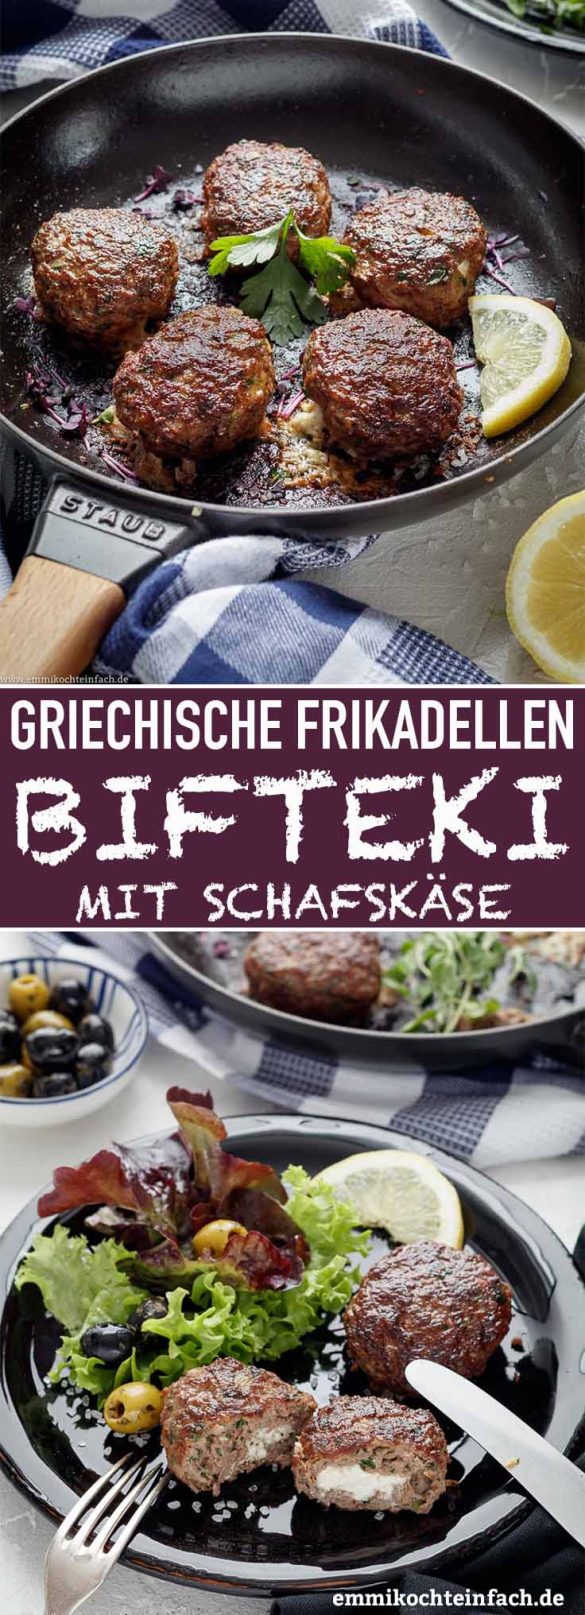 Bifteki - Griechische Frikadellen gefüllt mit Schafskäse - emmikochteinfach